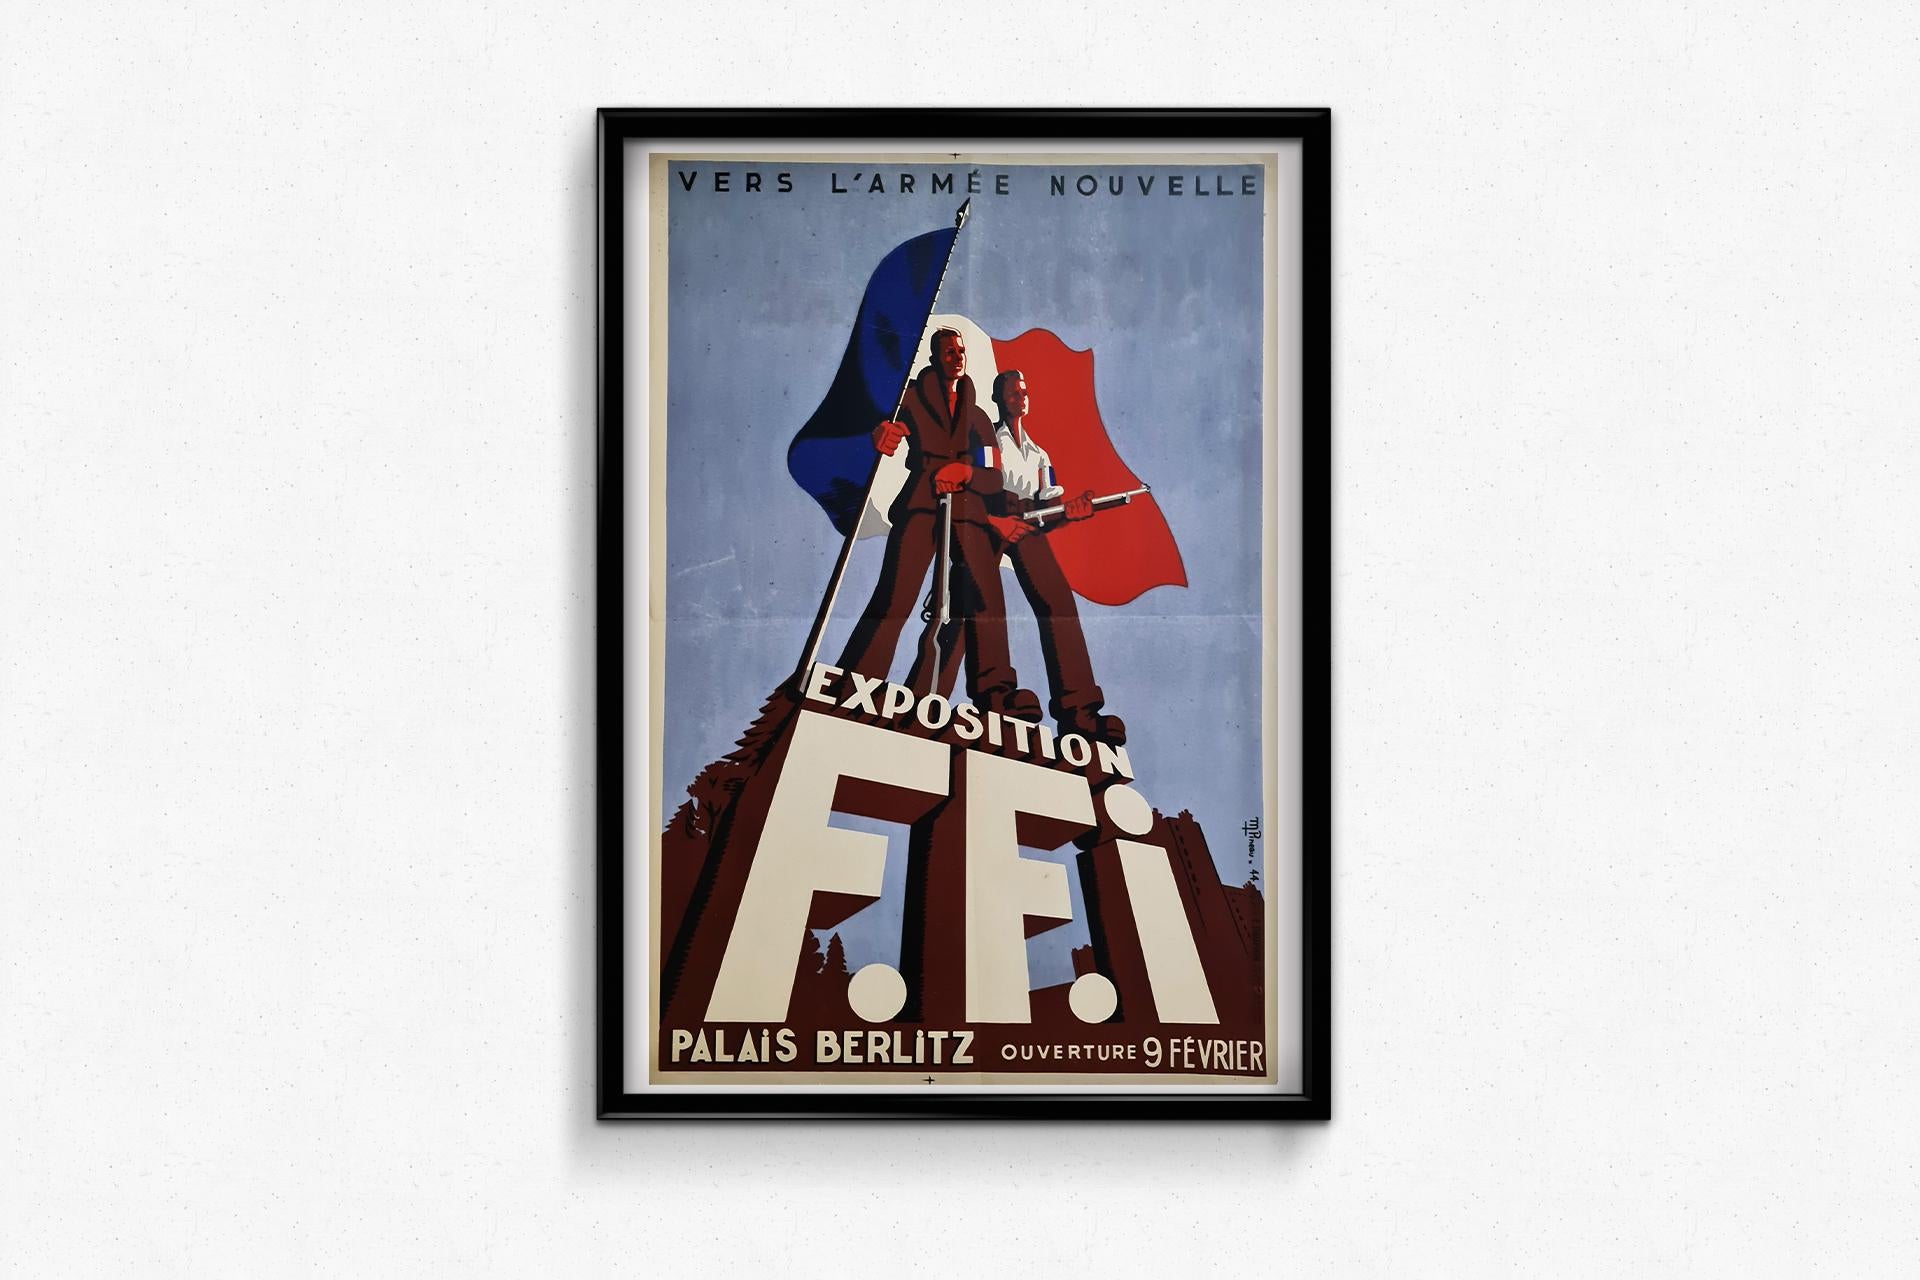 Une sublime affiche chargée d'histoire.

Maurice Pineau a réalisé cette œuvre pour promouvoir l'exposition de l'I+I qui s'est tenue au Palais Berlitz en 1944.

Les Forces françaises de l'intérieur (FFI) représentent les principales formations